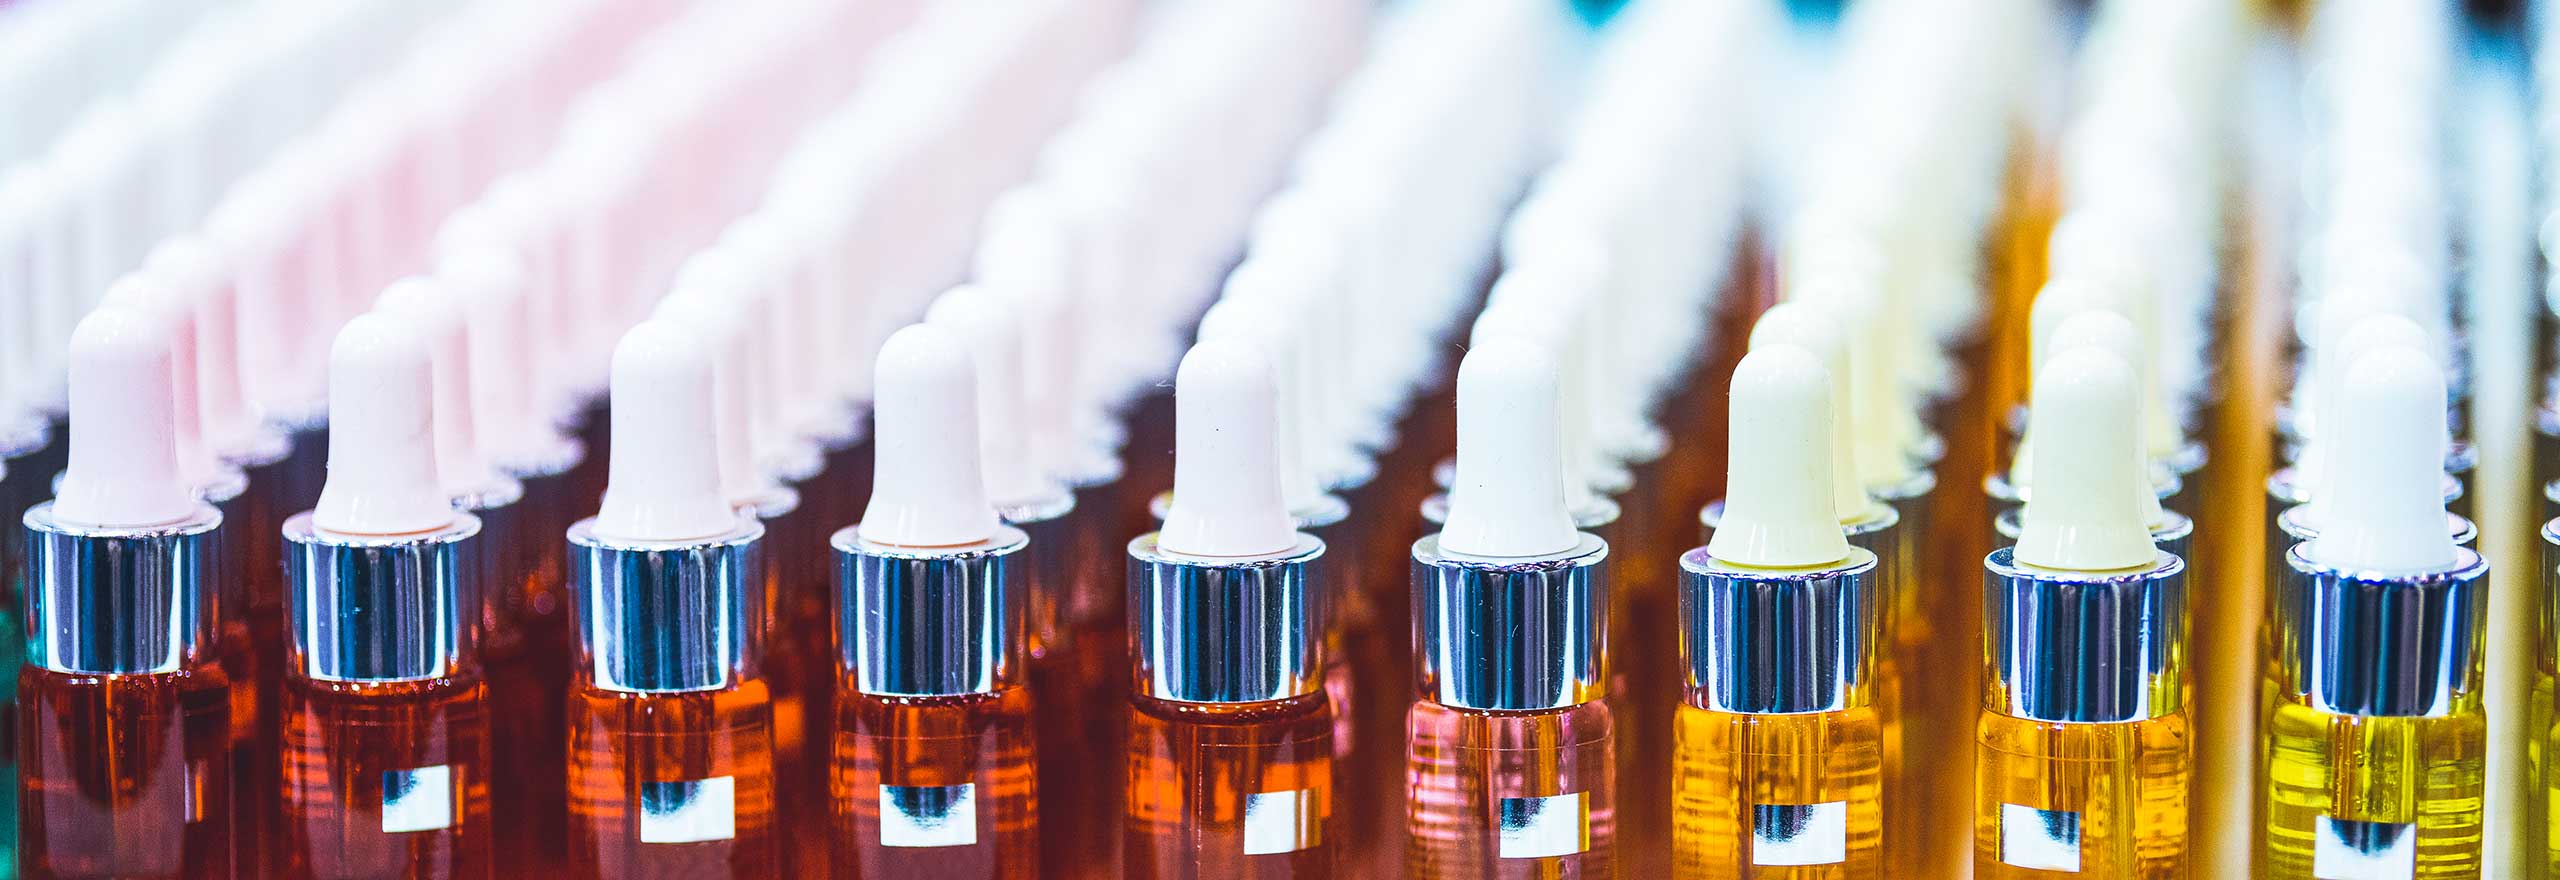 Botellas de colores claros en la fabricación de cosméticos